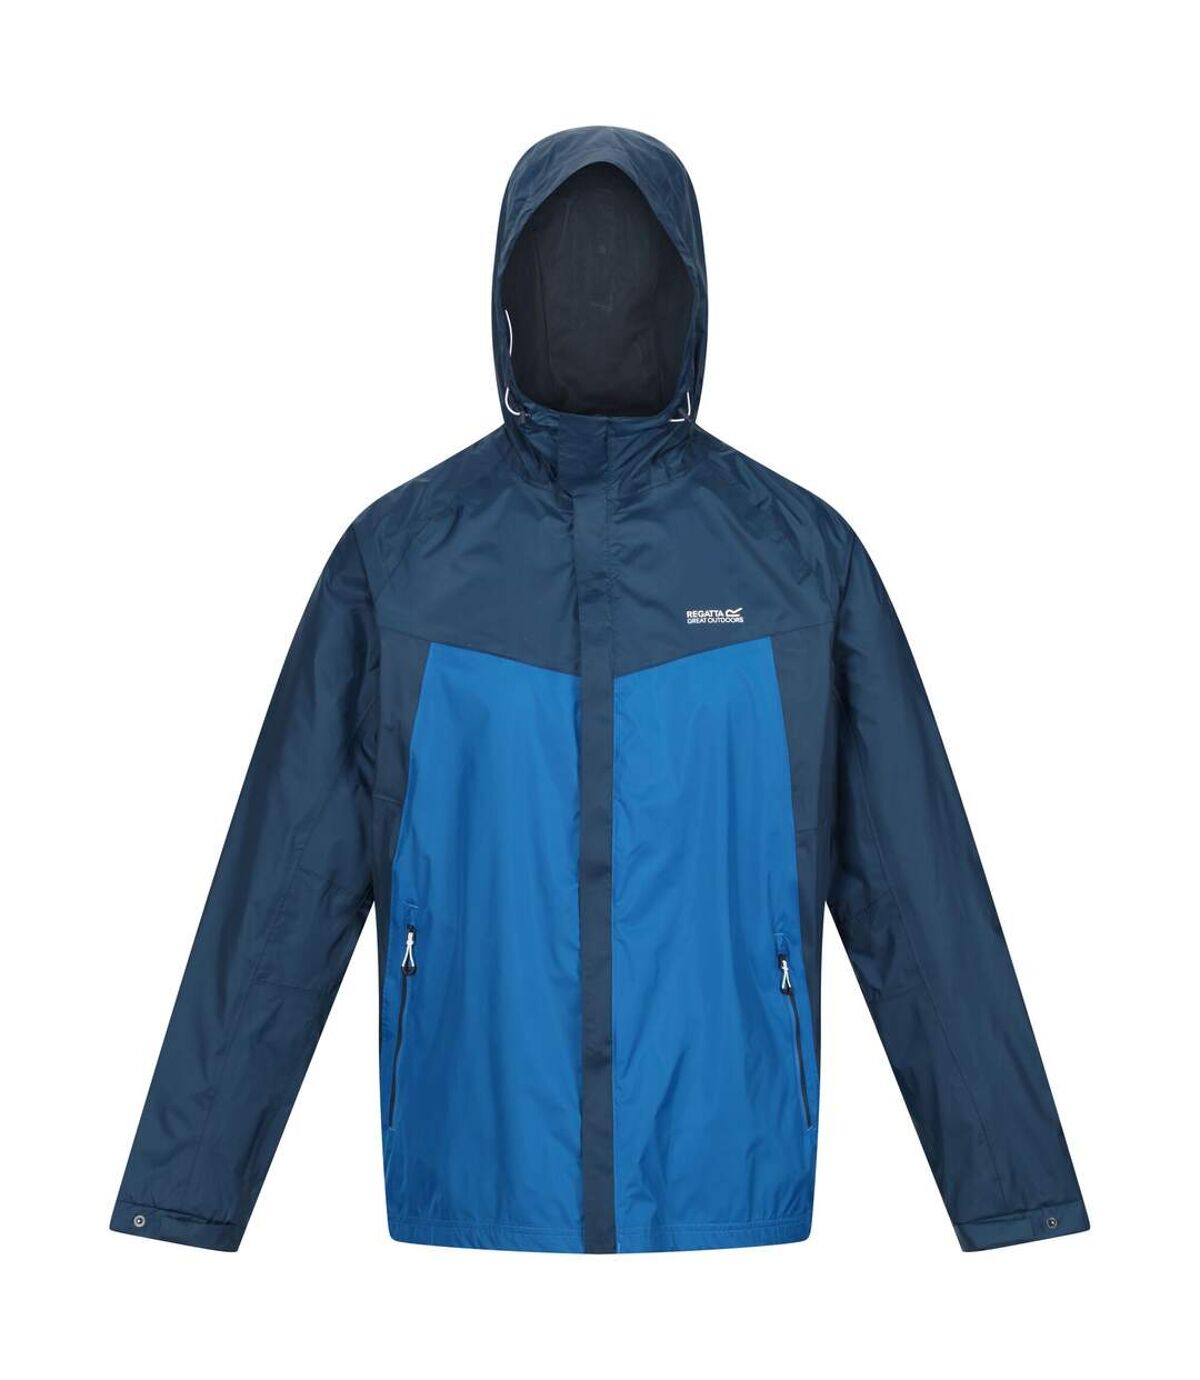 Regatta Mens Dresford Waterproof Jacket (Moonlight Denim/Imperial Blue) - UTRG7711